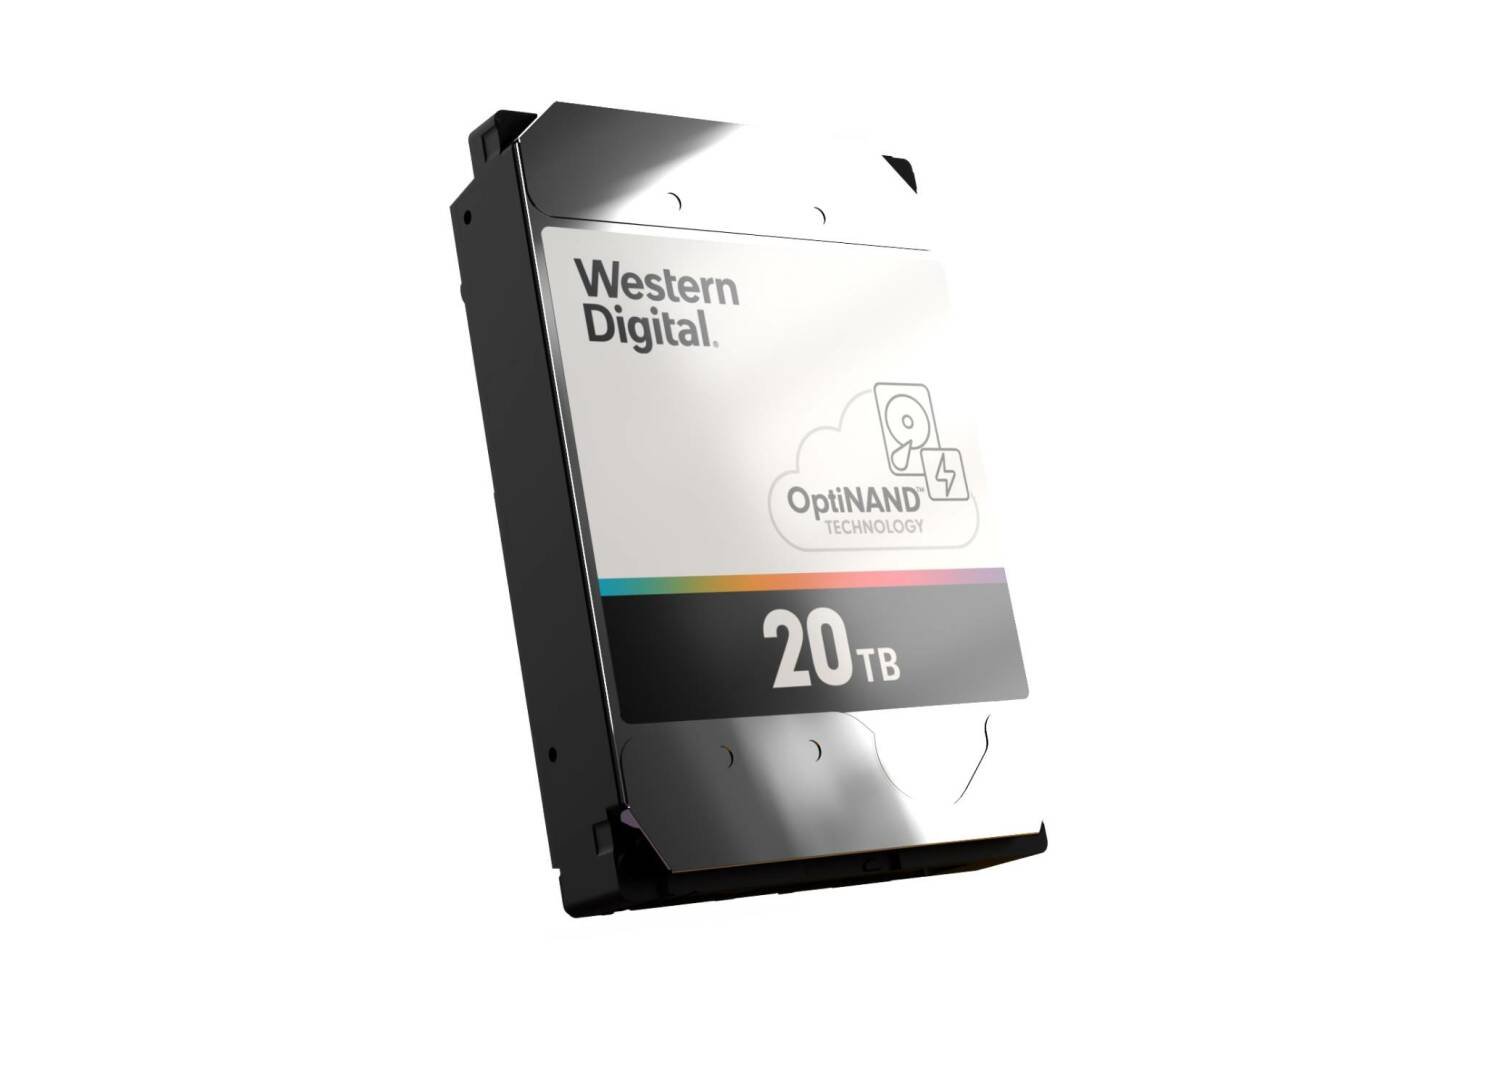 Immagine di Western Digital OptiNAND rivoluzionerà gli Hard Disk del futuro